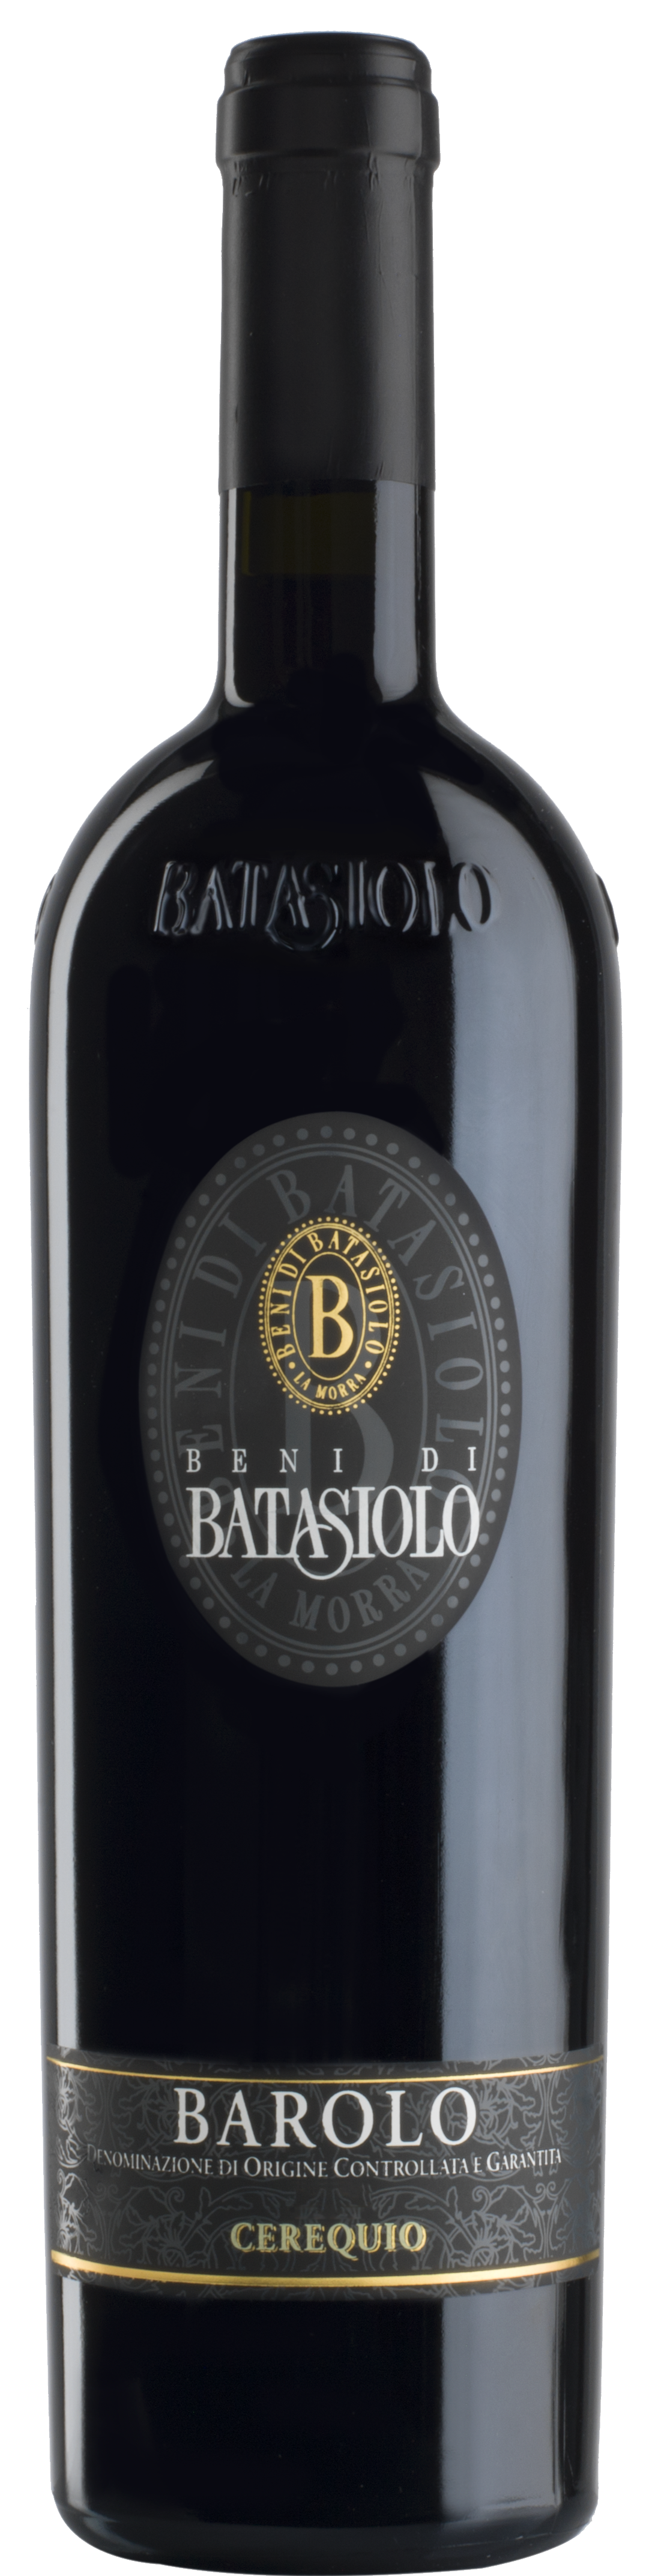 Batasiolo Vigneto Cerequio Barolo 2012- Piemont - Rotwein trocken - 0,75l - 14% vol.